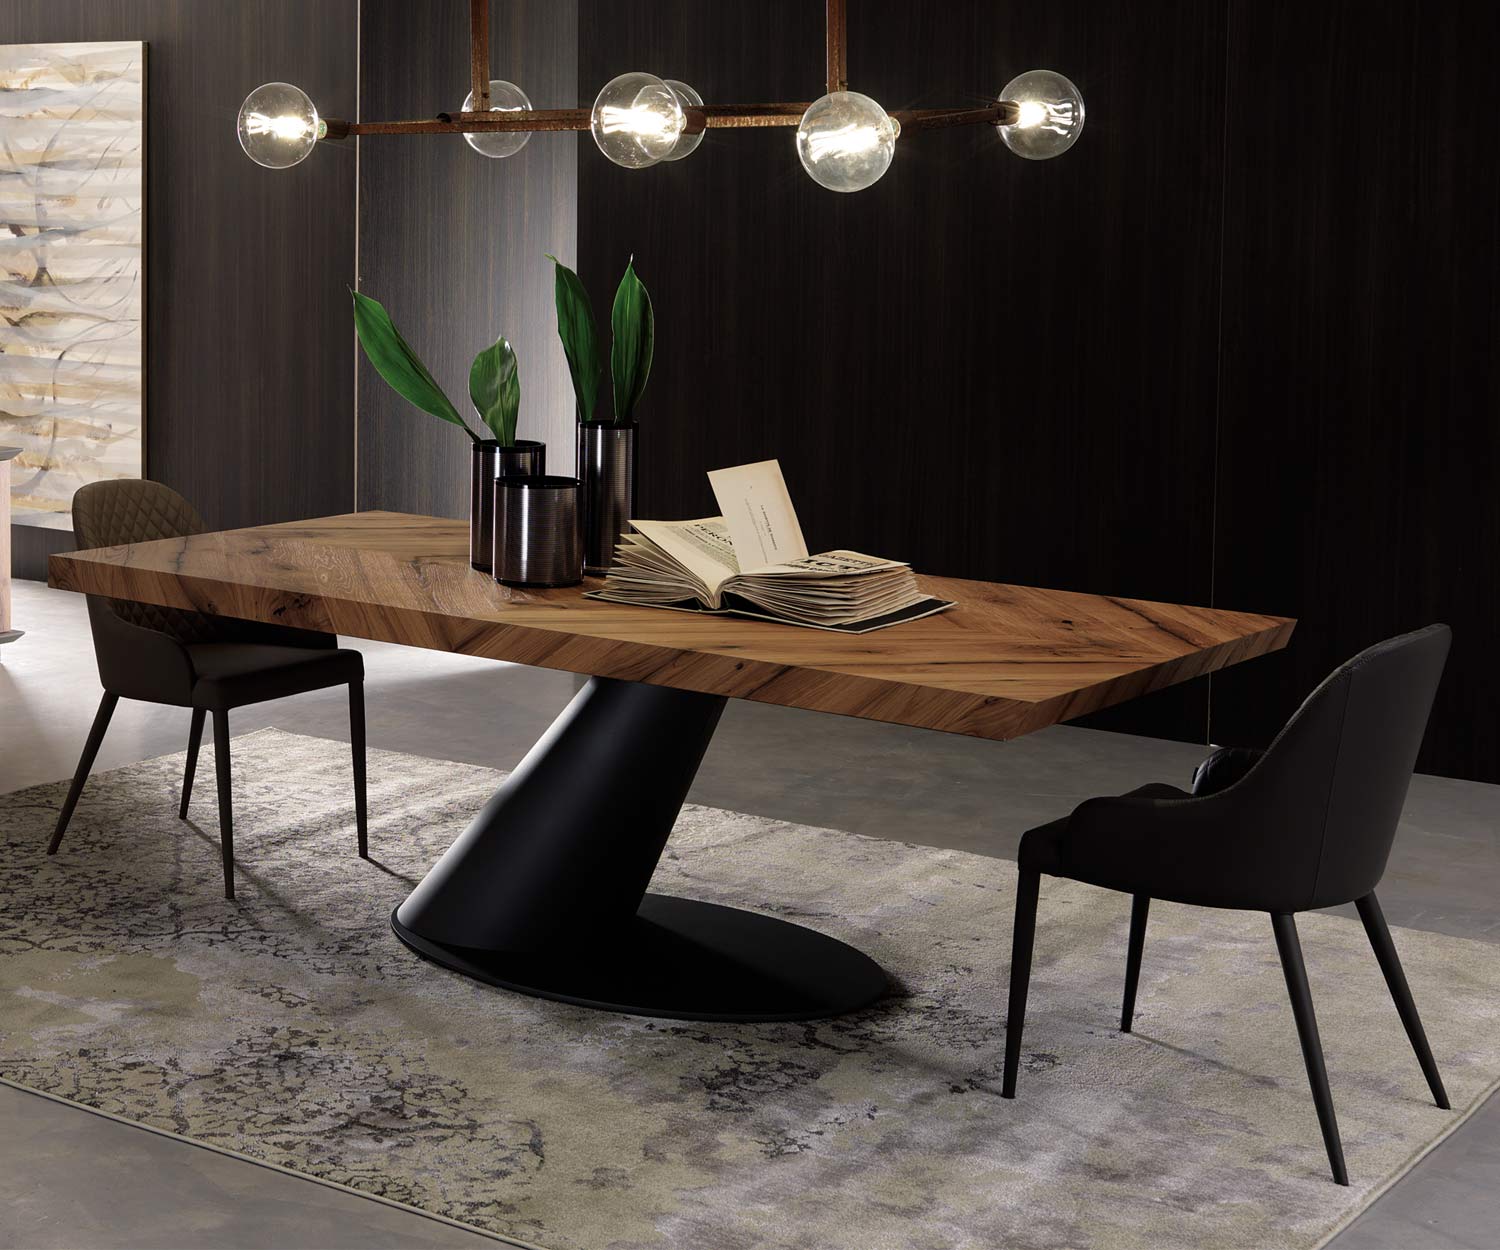 Moderne Ozzio Design stoel Betta leer zwart geplaatst aan de tafel in de eetkamer